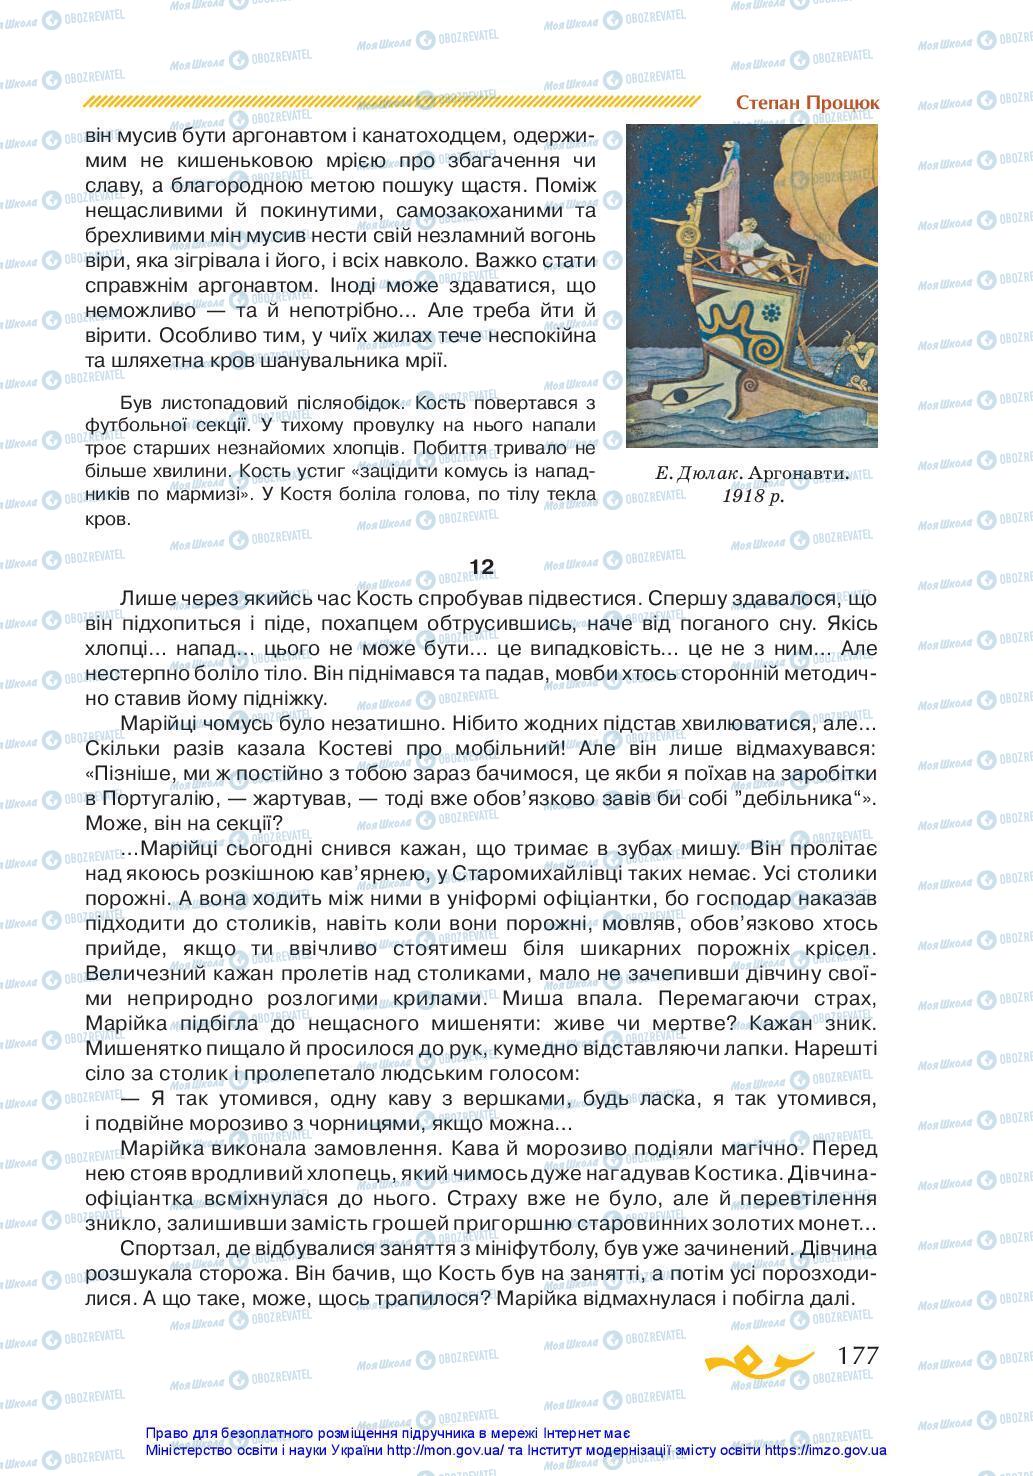 Учебники Укр лит 7 класс страница 177